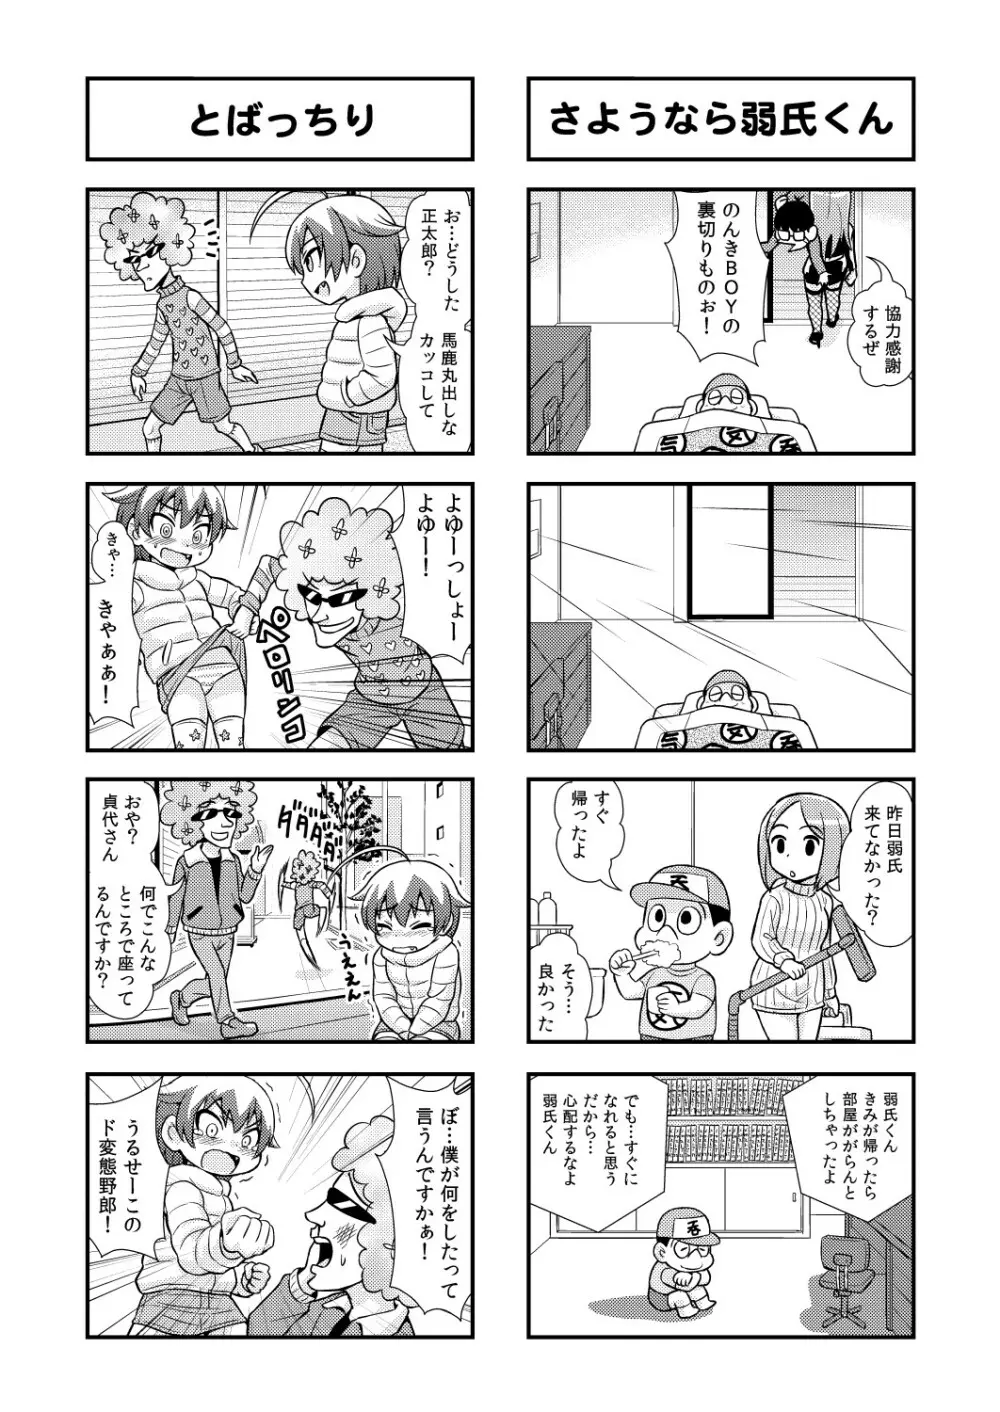 のんきBOY 1-41 50ページ